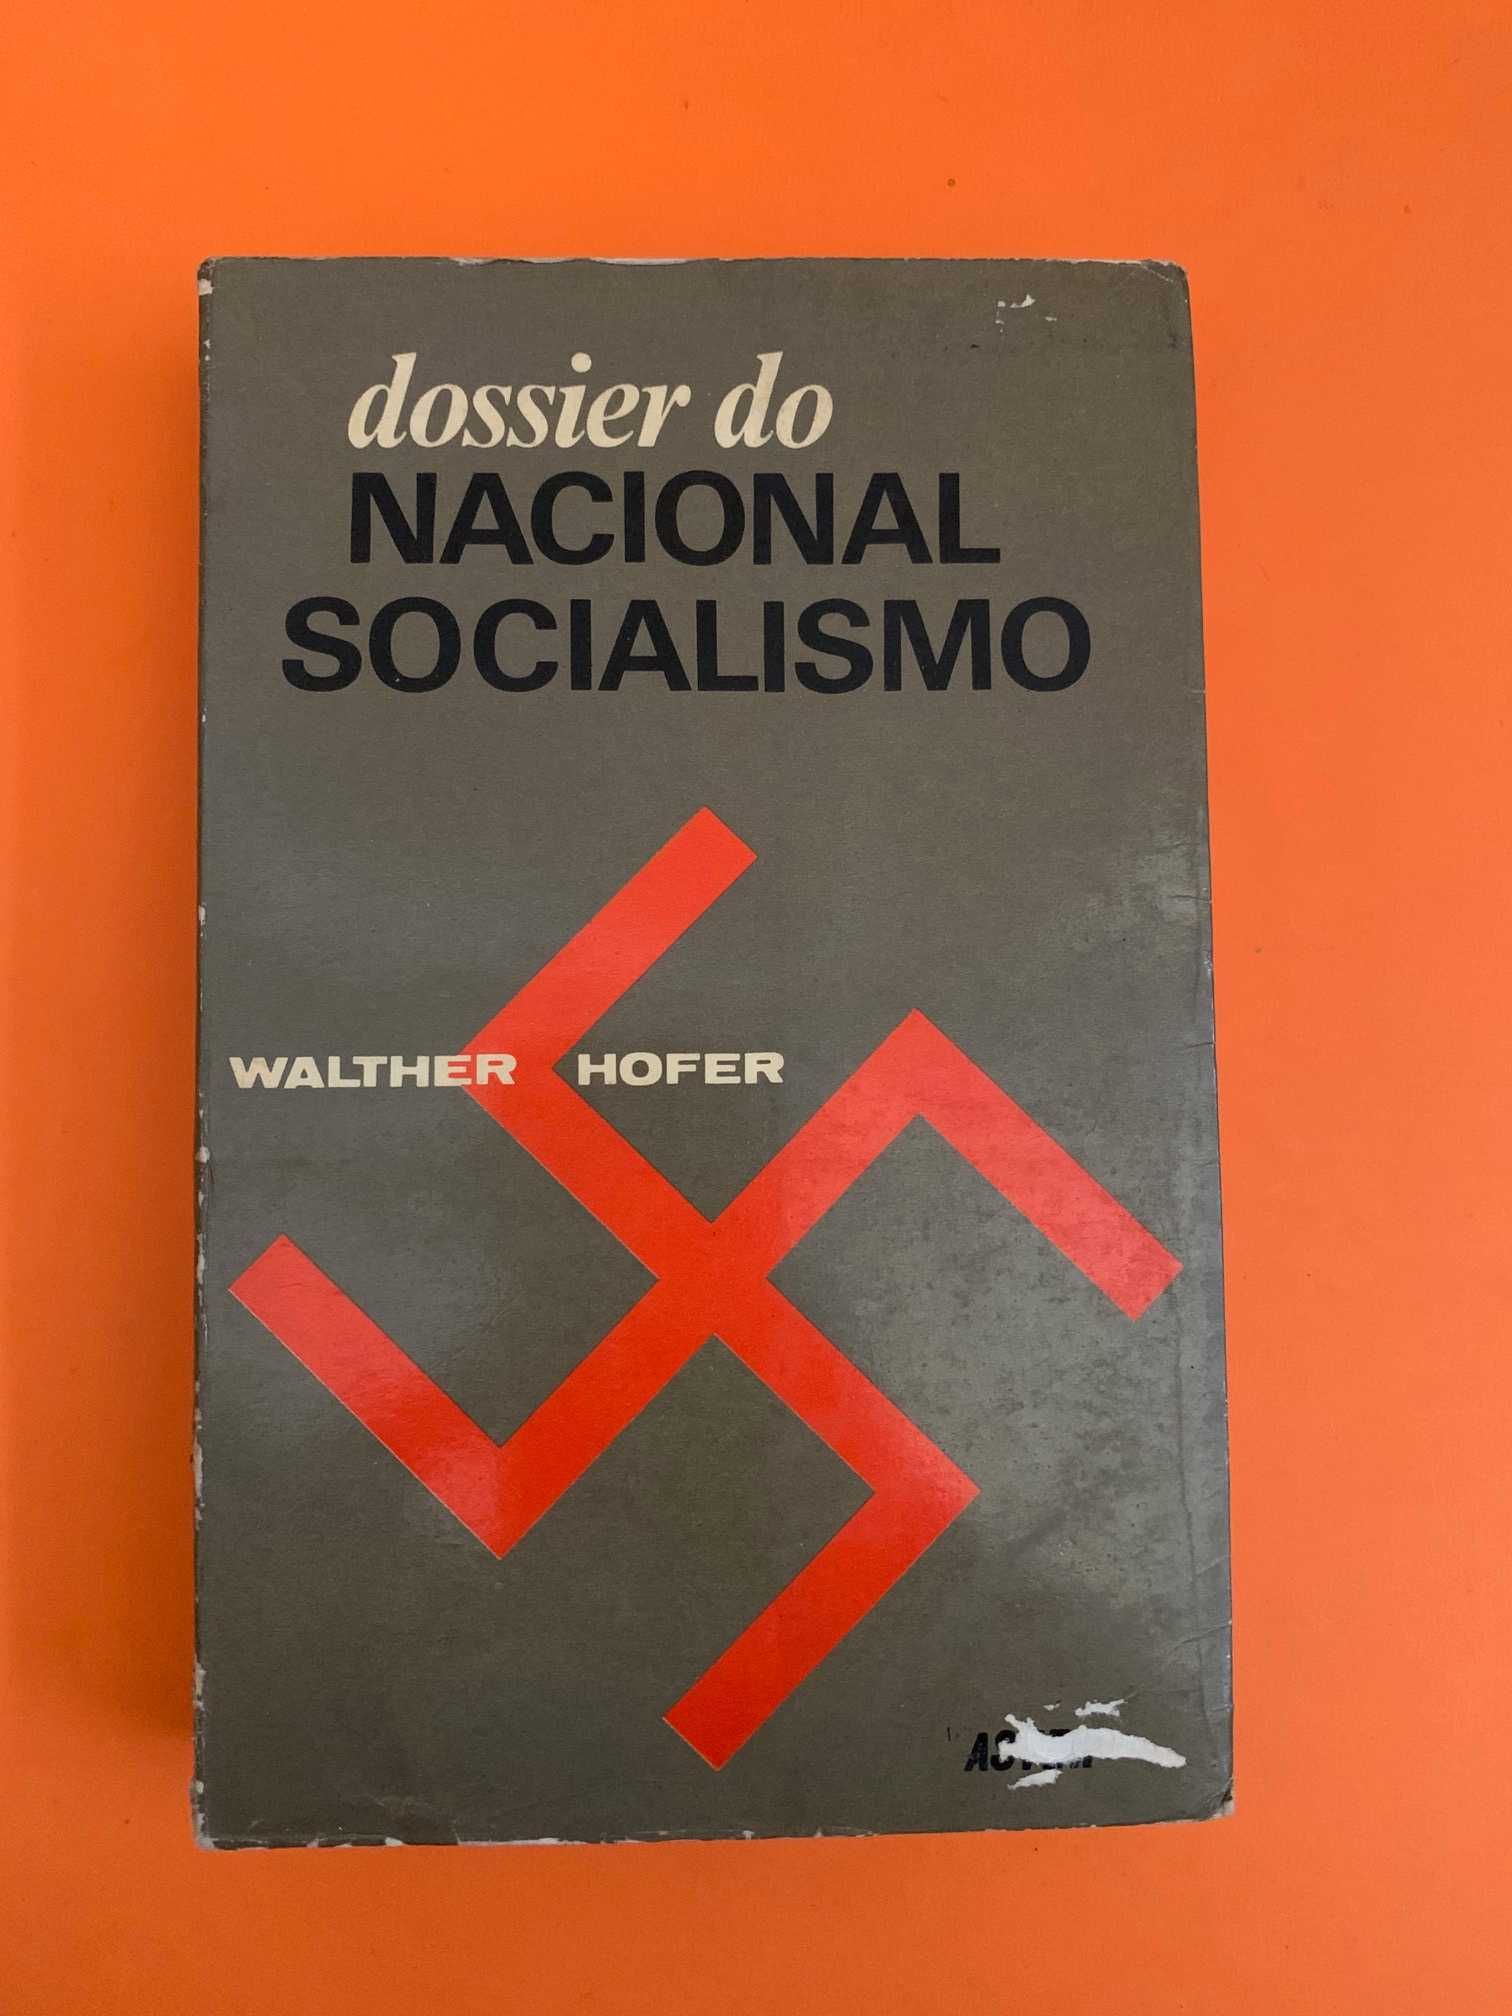 Dossier do Nacional Socialismo - Walther Hofer